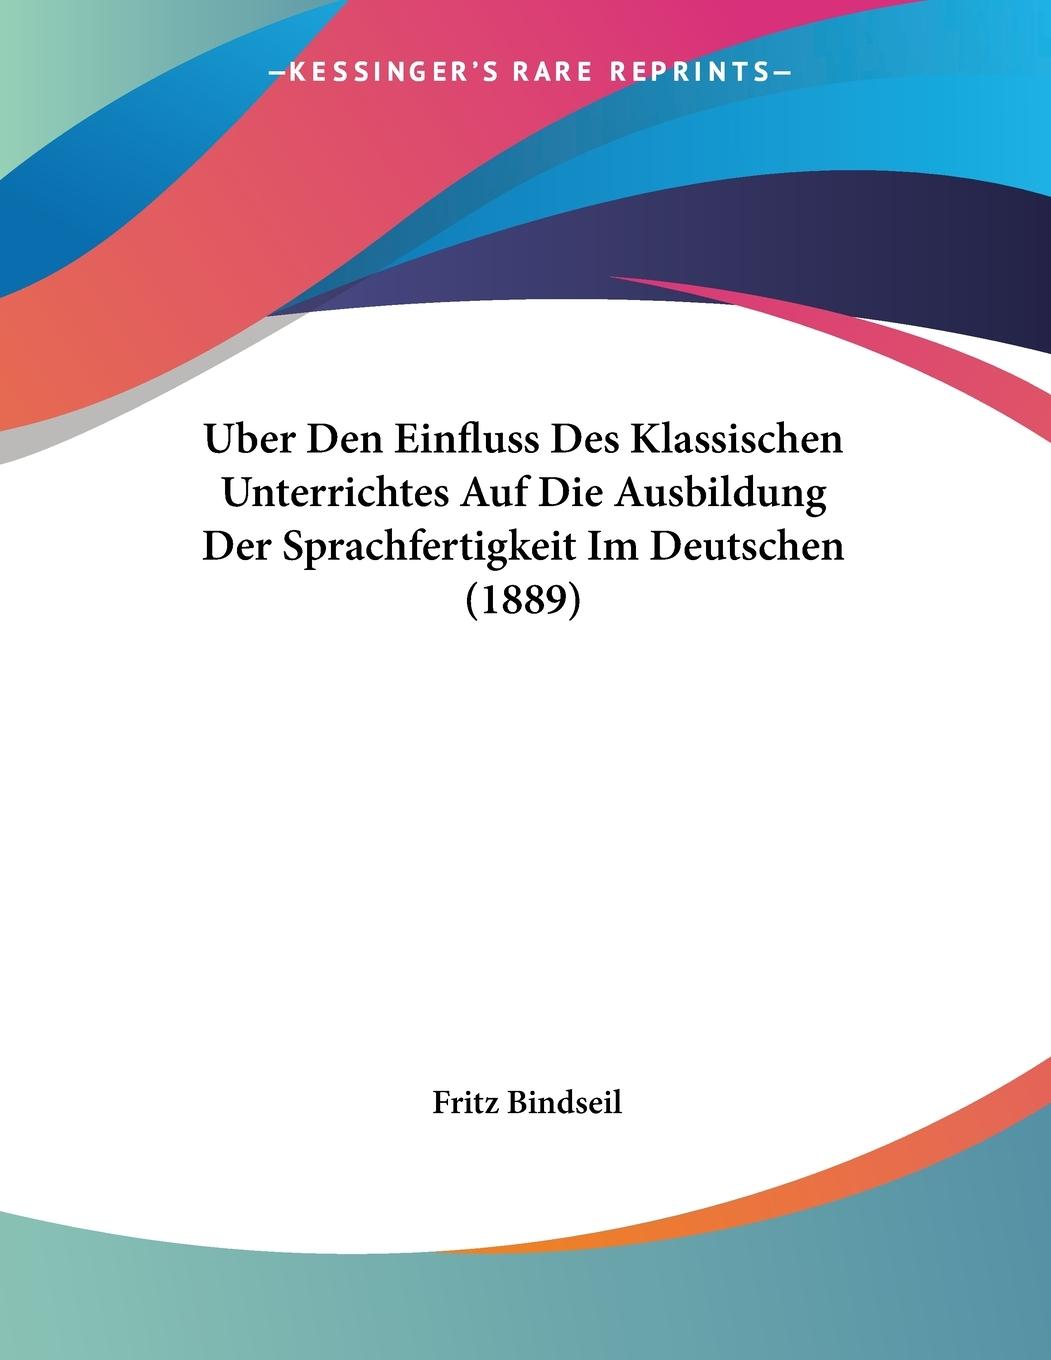 Uber Den Einfluss Des Klassischen Unterrichtes Auf Die Ausbildung Der Sprachfertigkeit Im Deutschen (1889) - Bindseil, Fritz